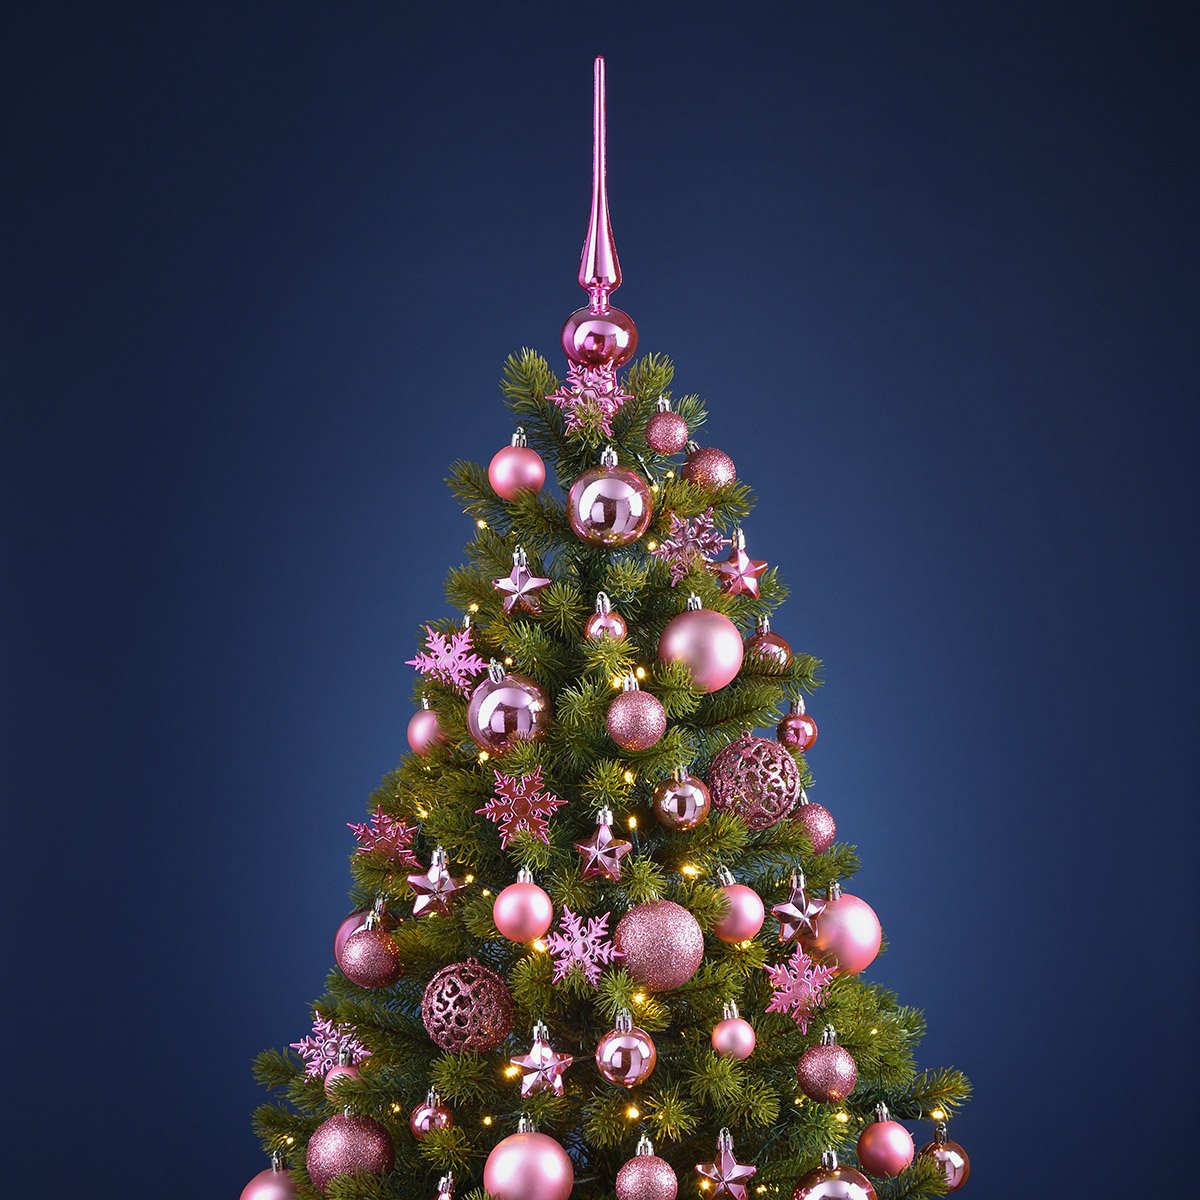 Set di gingilli di Natale in plastica rosa/rosa Set di 111, (L/H/D) 36x23x12cm Ø 3/4/6 cm